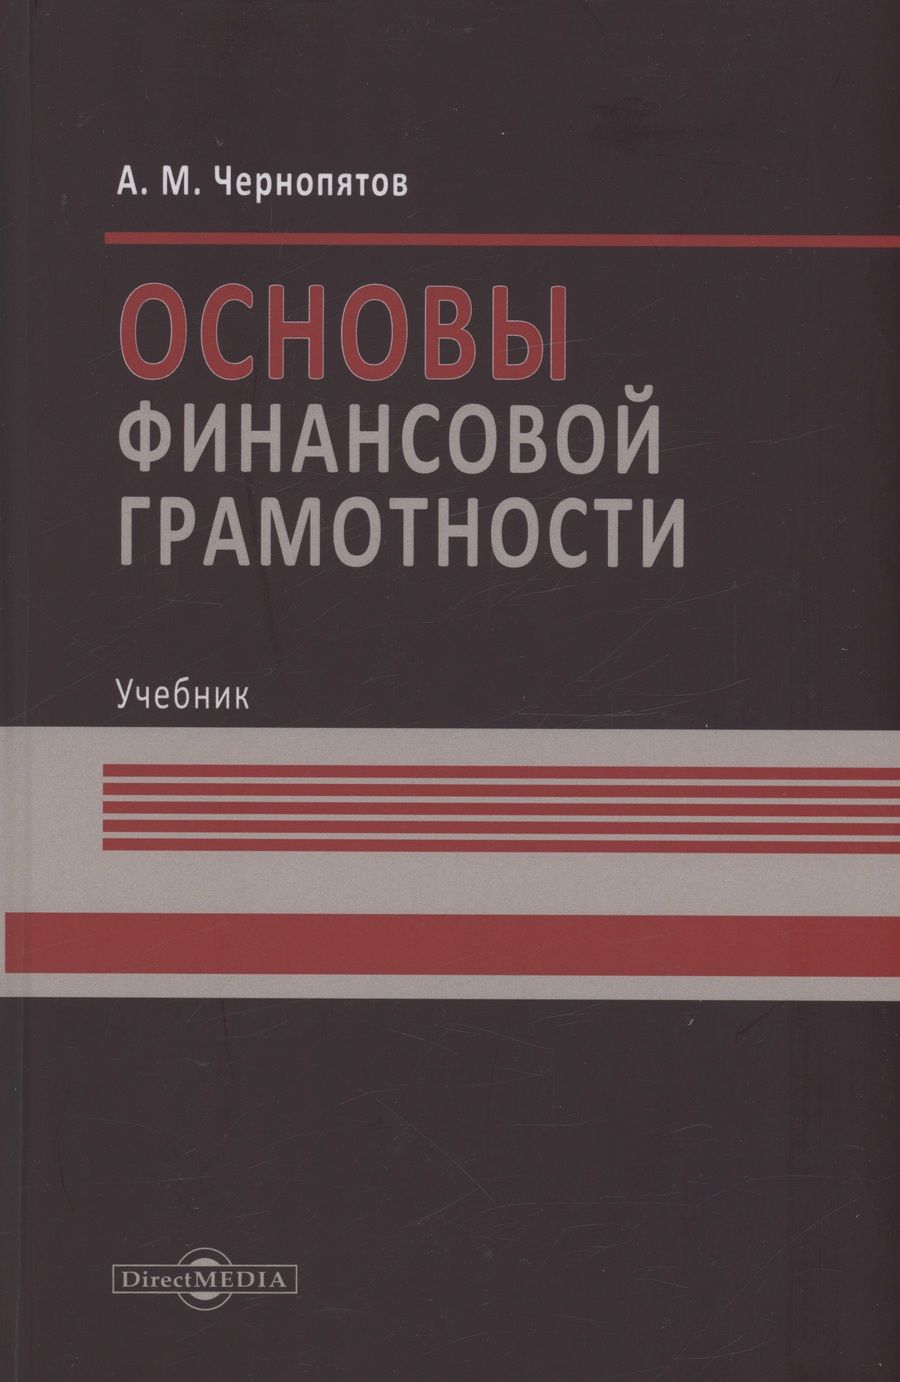 Обложка книги "Чернопятов: Основы финансовой грамотности. Учебник"